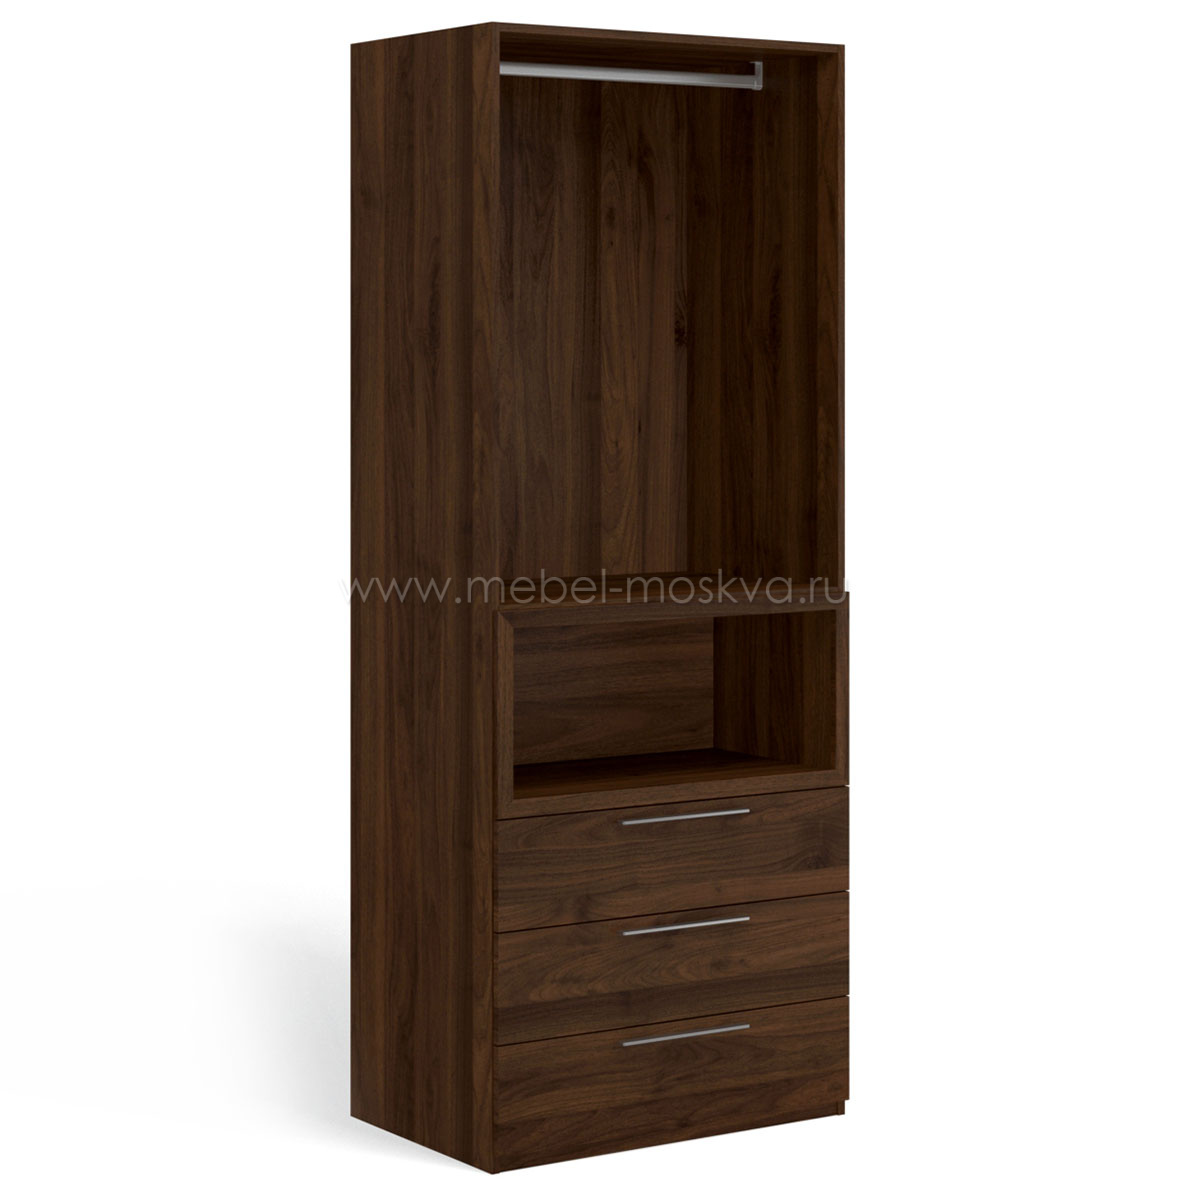 Шкаф для одежды Solo Quadro с нишей (орех Коламбия)